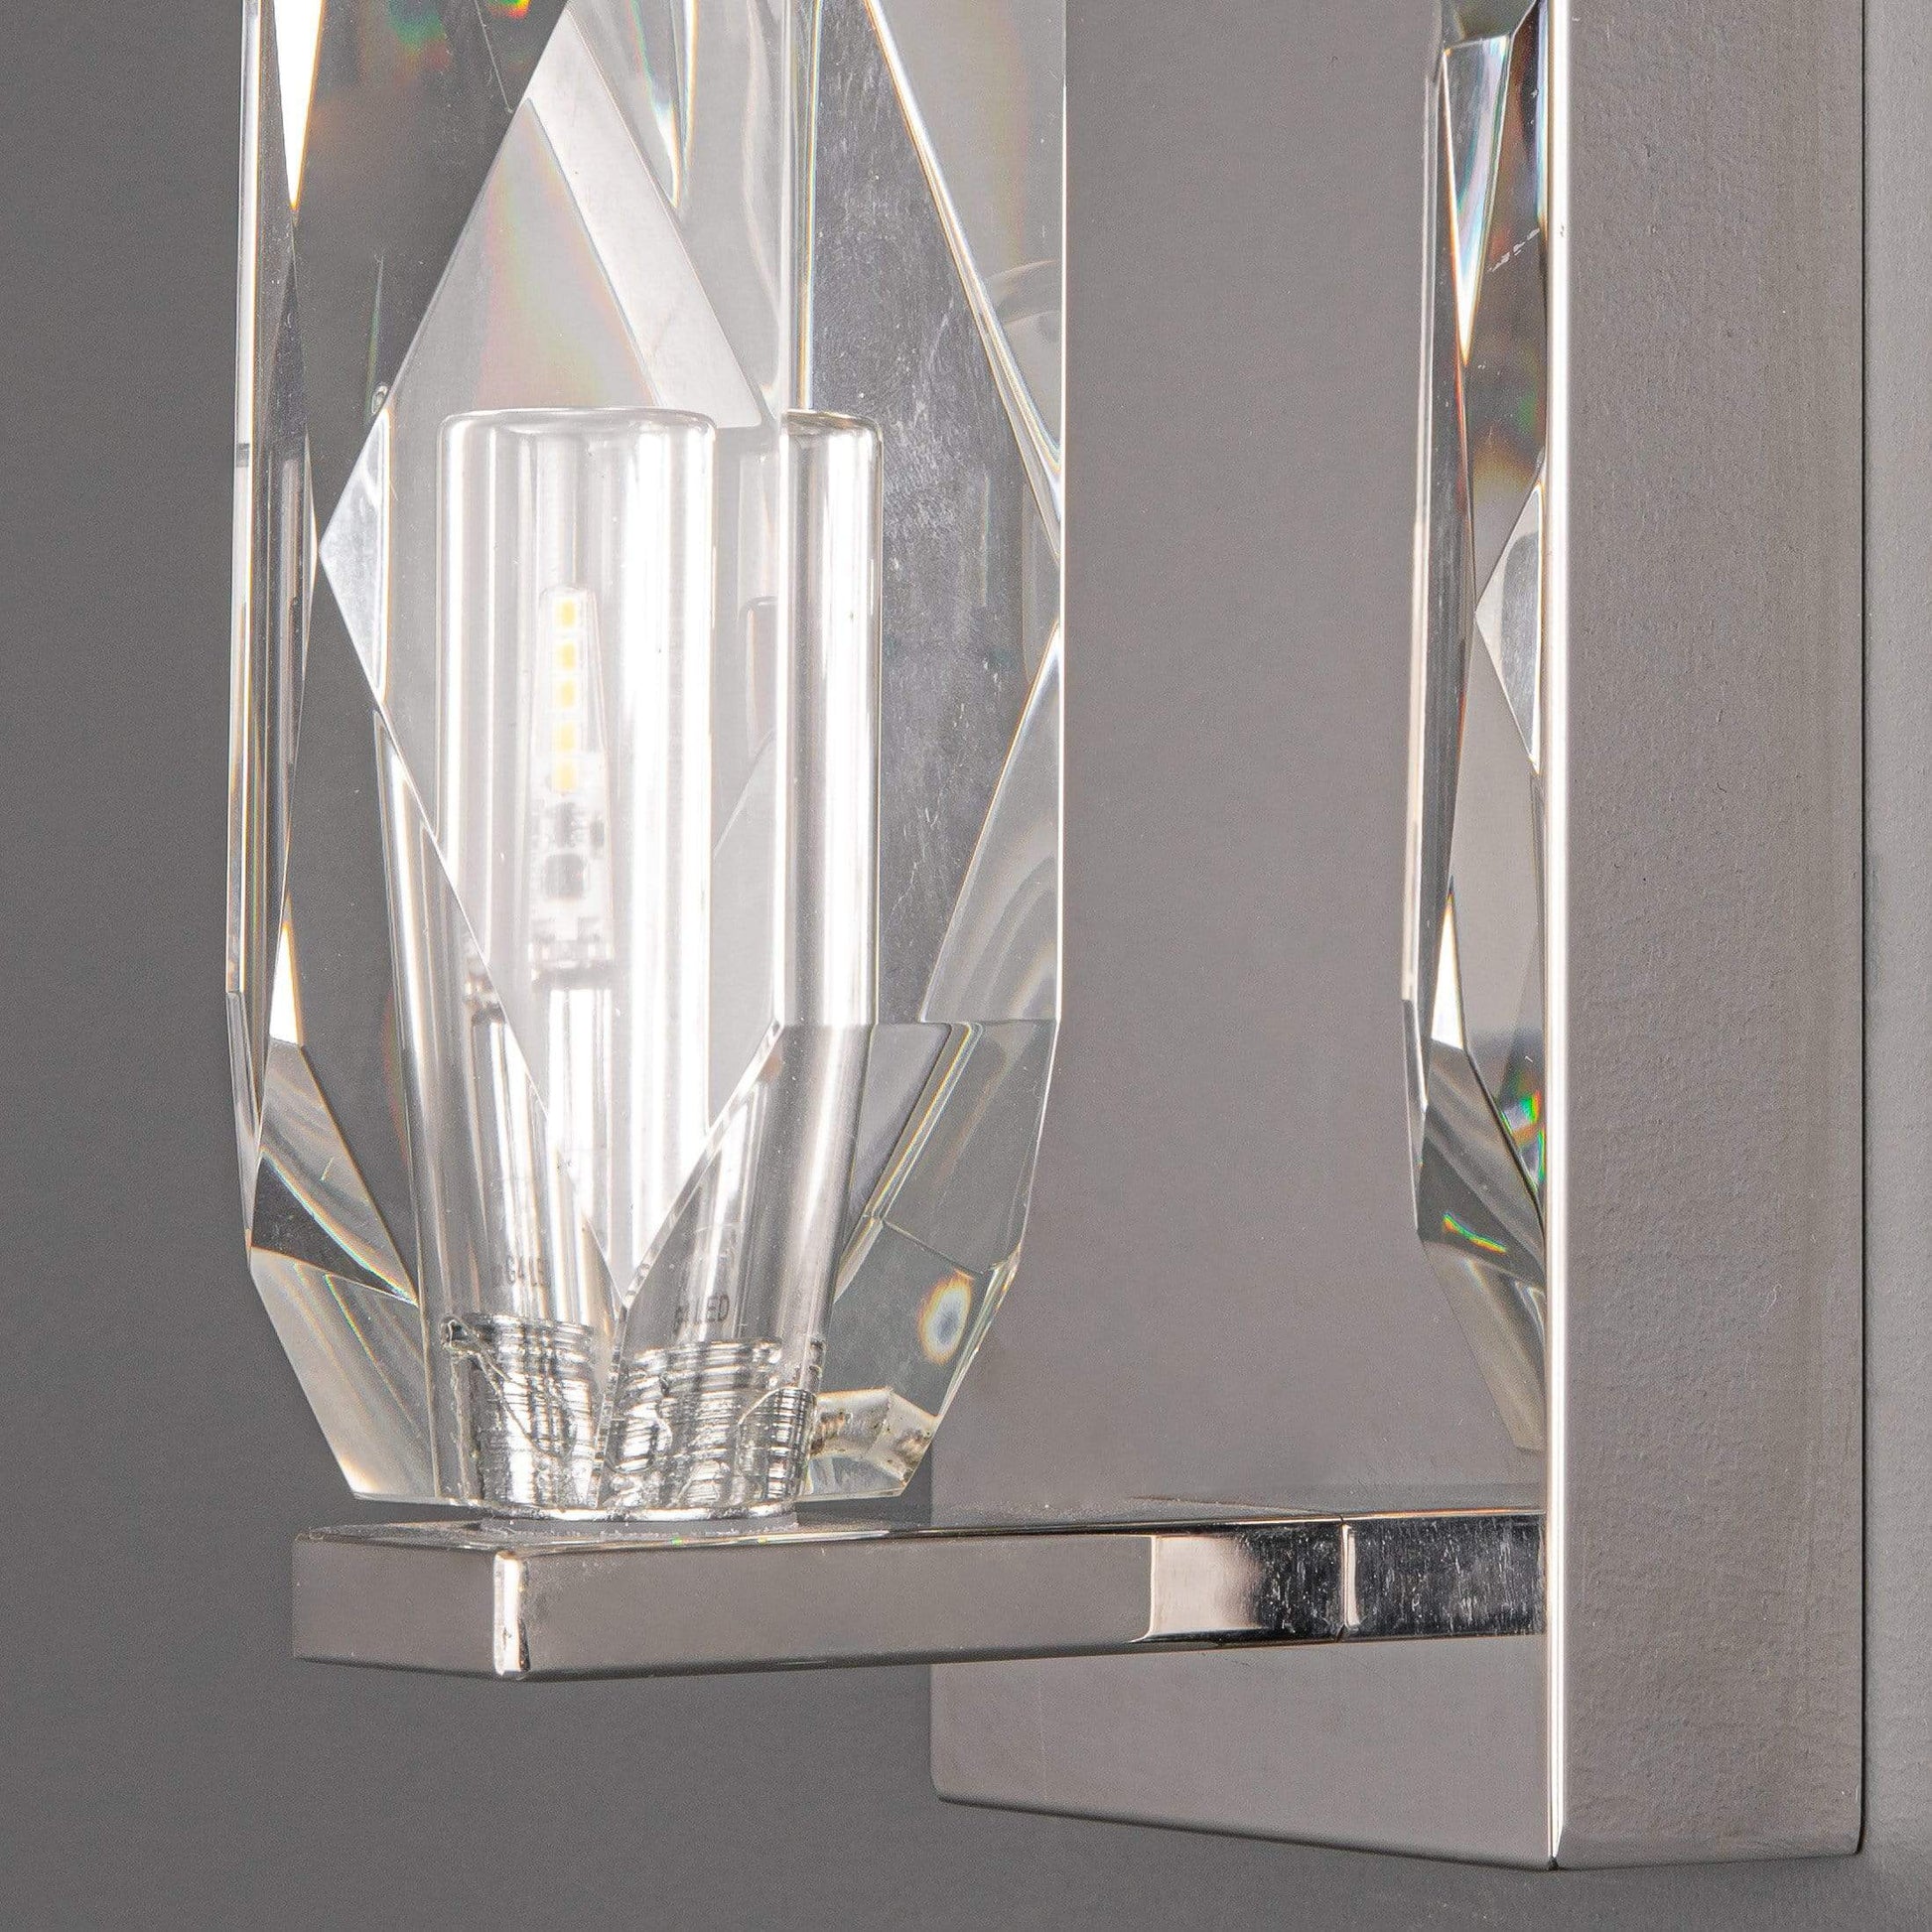 Lights  -  Crystal Wall Light Polished Chrome & Crystal  -  50146067